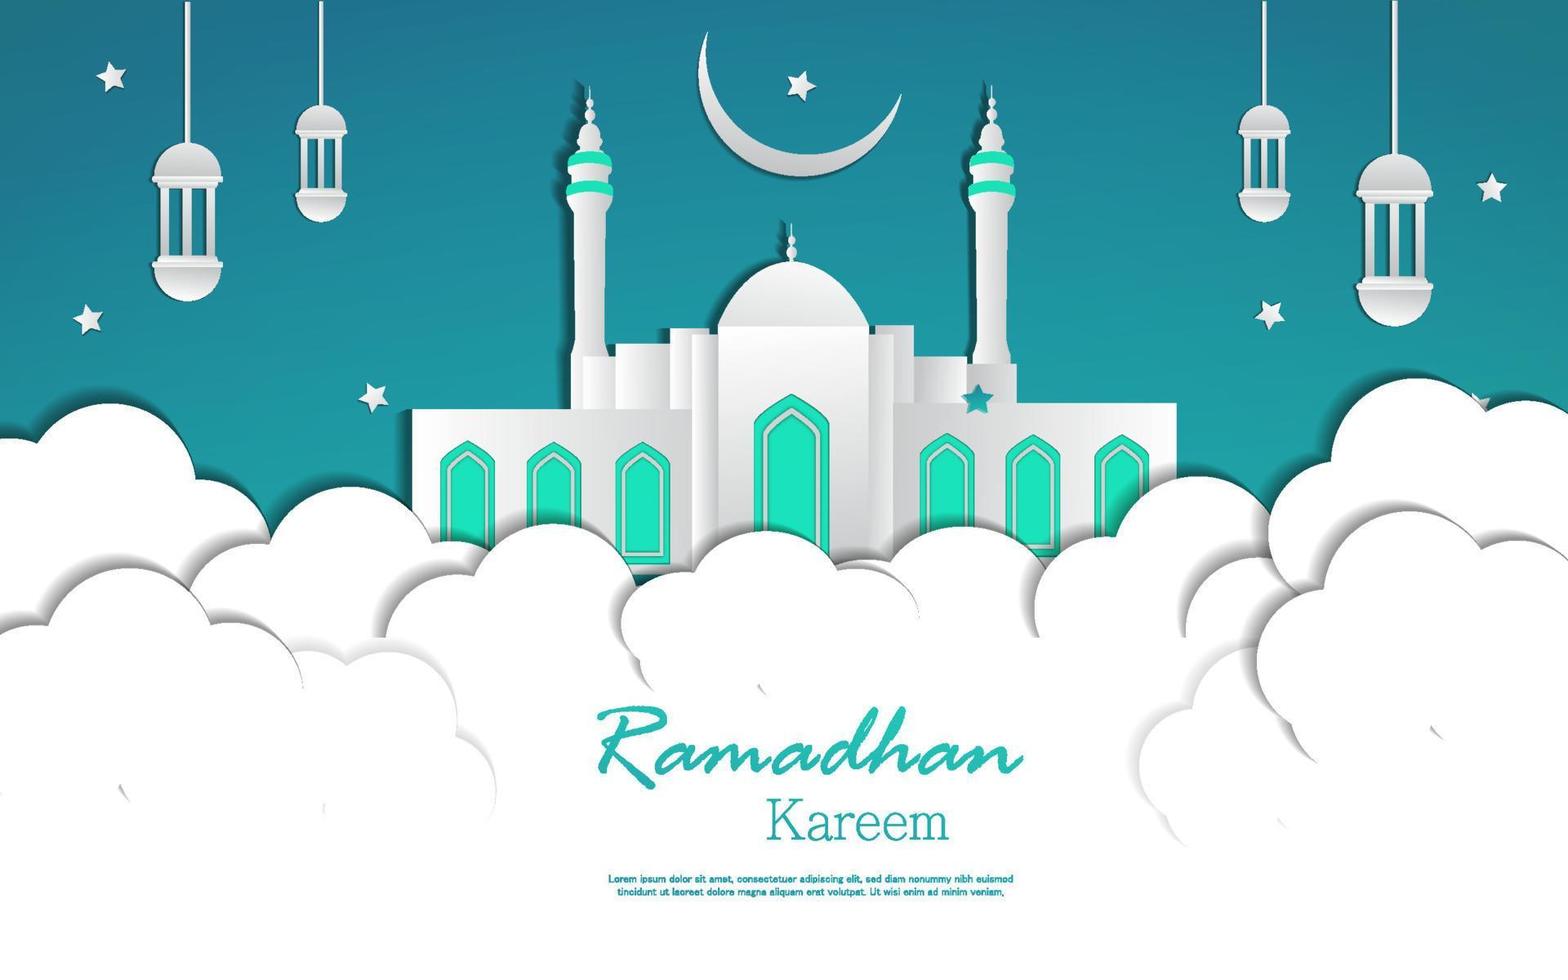 ramadhan kareem com estilo de arte de papel de mesquita vetor